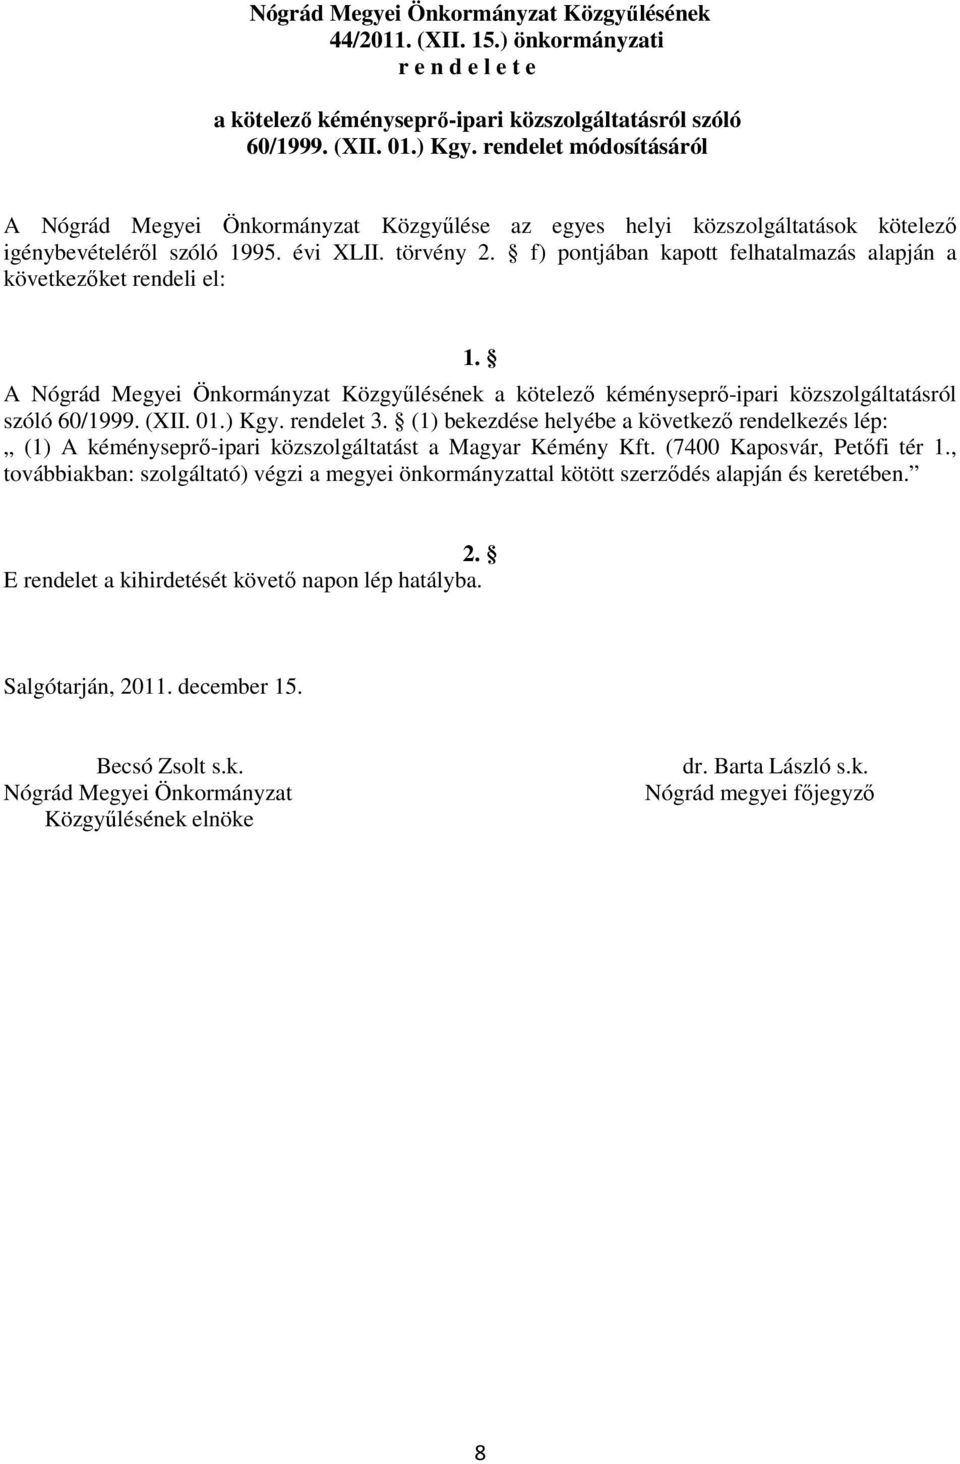 f) pontjában kapott felhatalmazás alapján a következőket rendeli el: 1. A Nógrád Megyei Önkormányzat Közgyűlésének a kötelező kéményseprő-ipari közszolgáltatásról szóló 60/1999. (XII. 01.) Kgy.